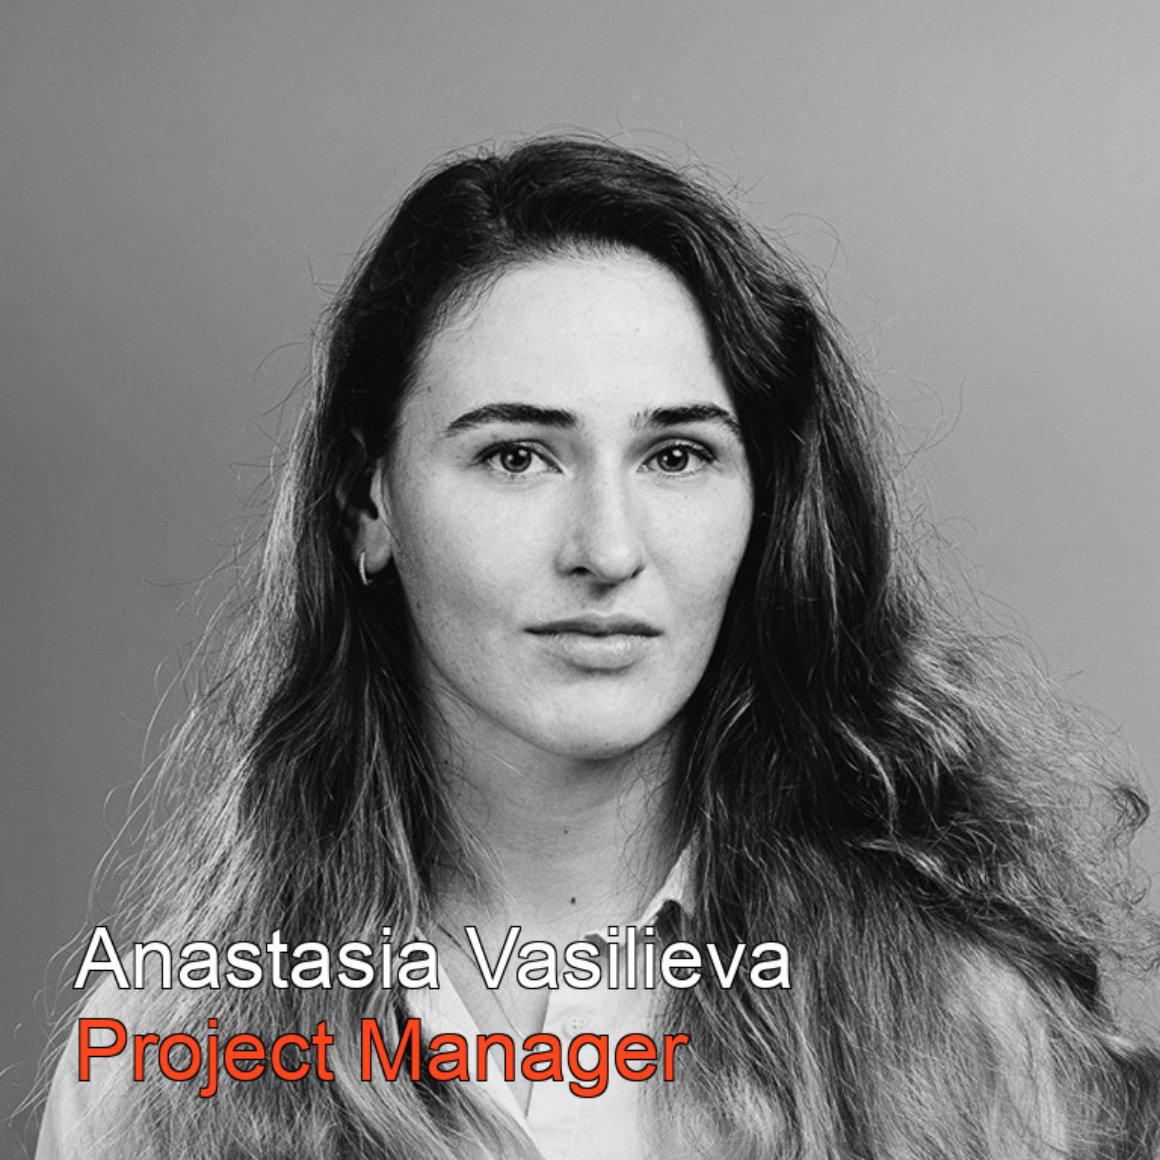 Anastasia Vasilieva PM BW